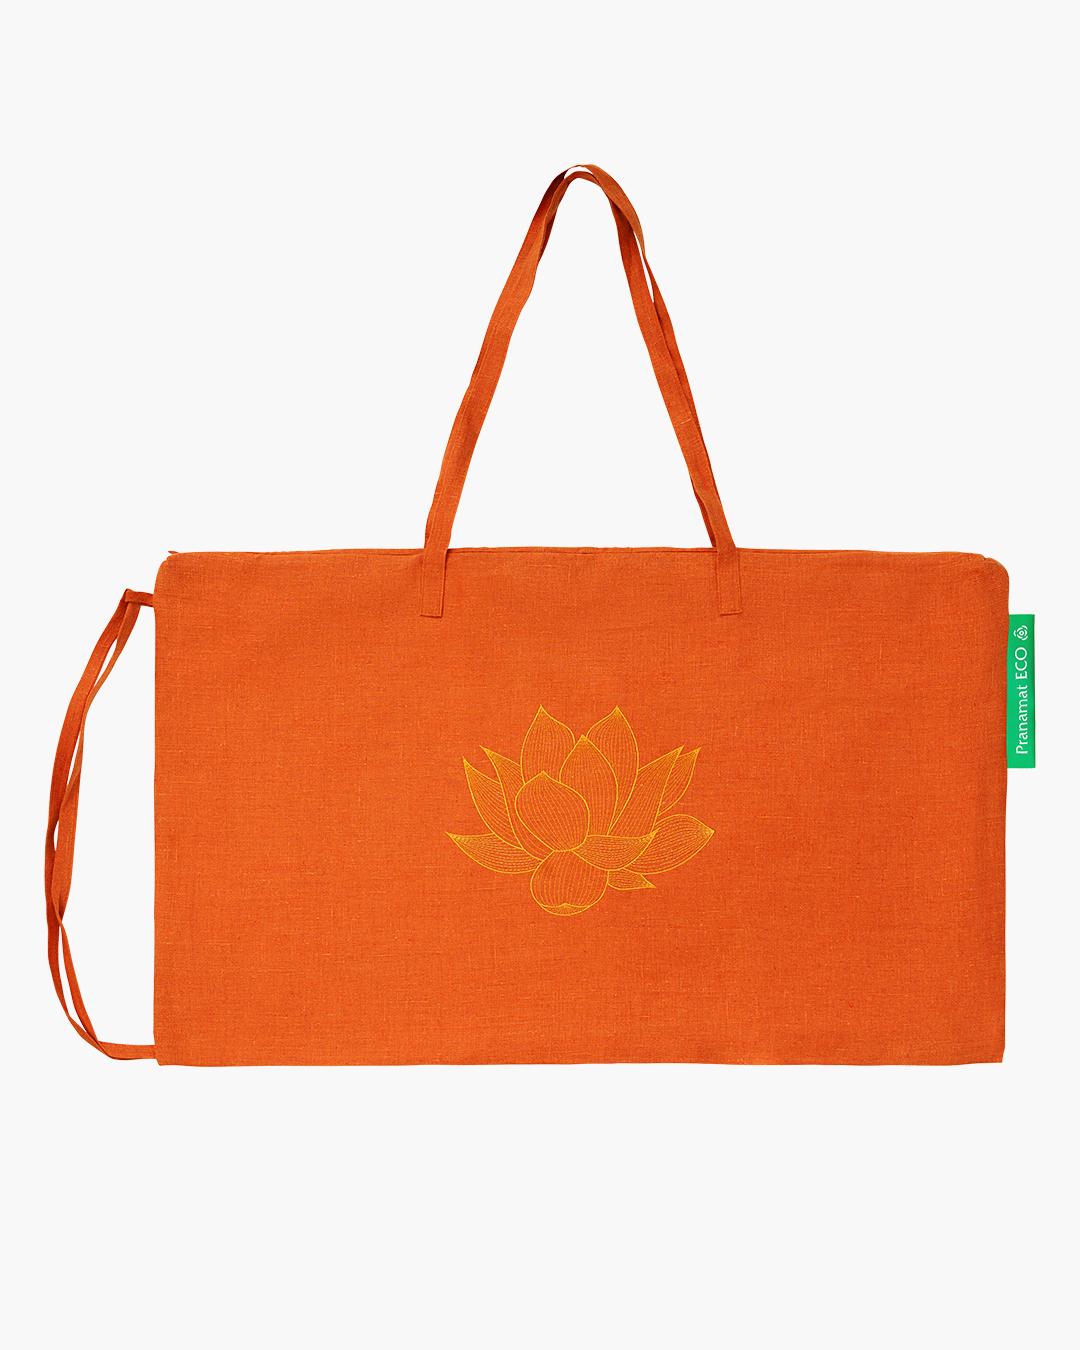 Комплект Pranamat ECO (Коврик + подушка + сумка)